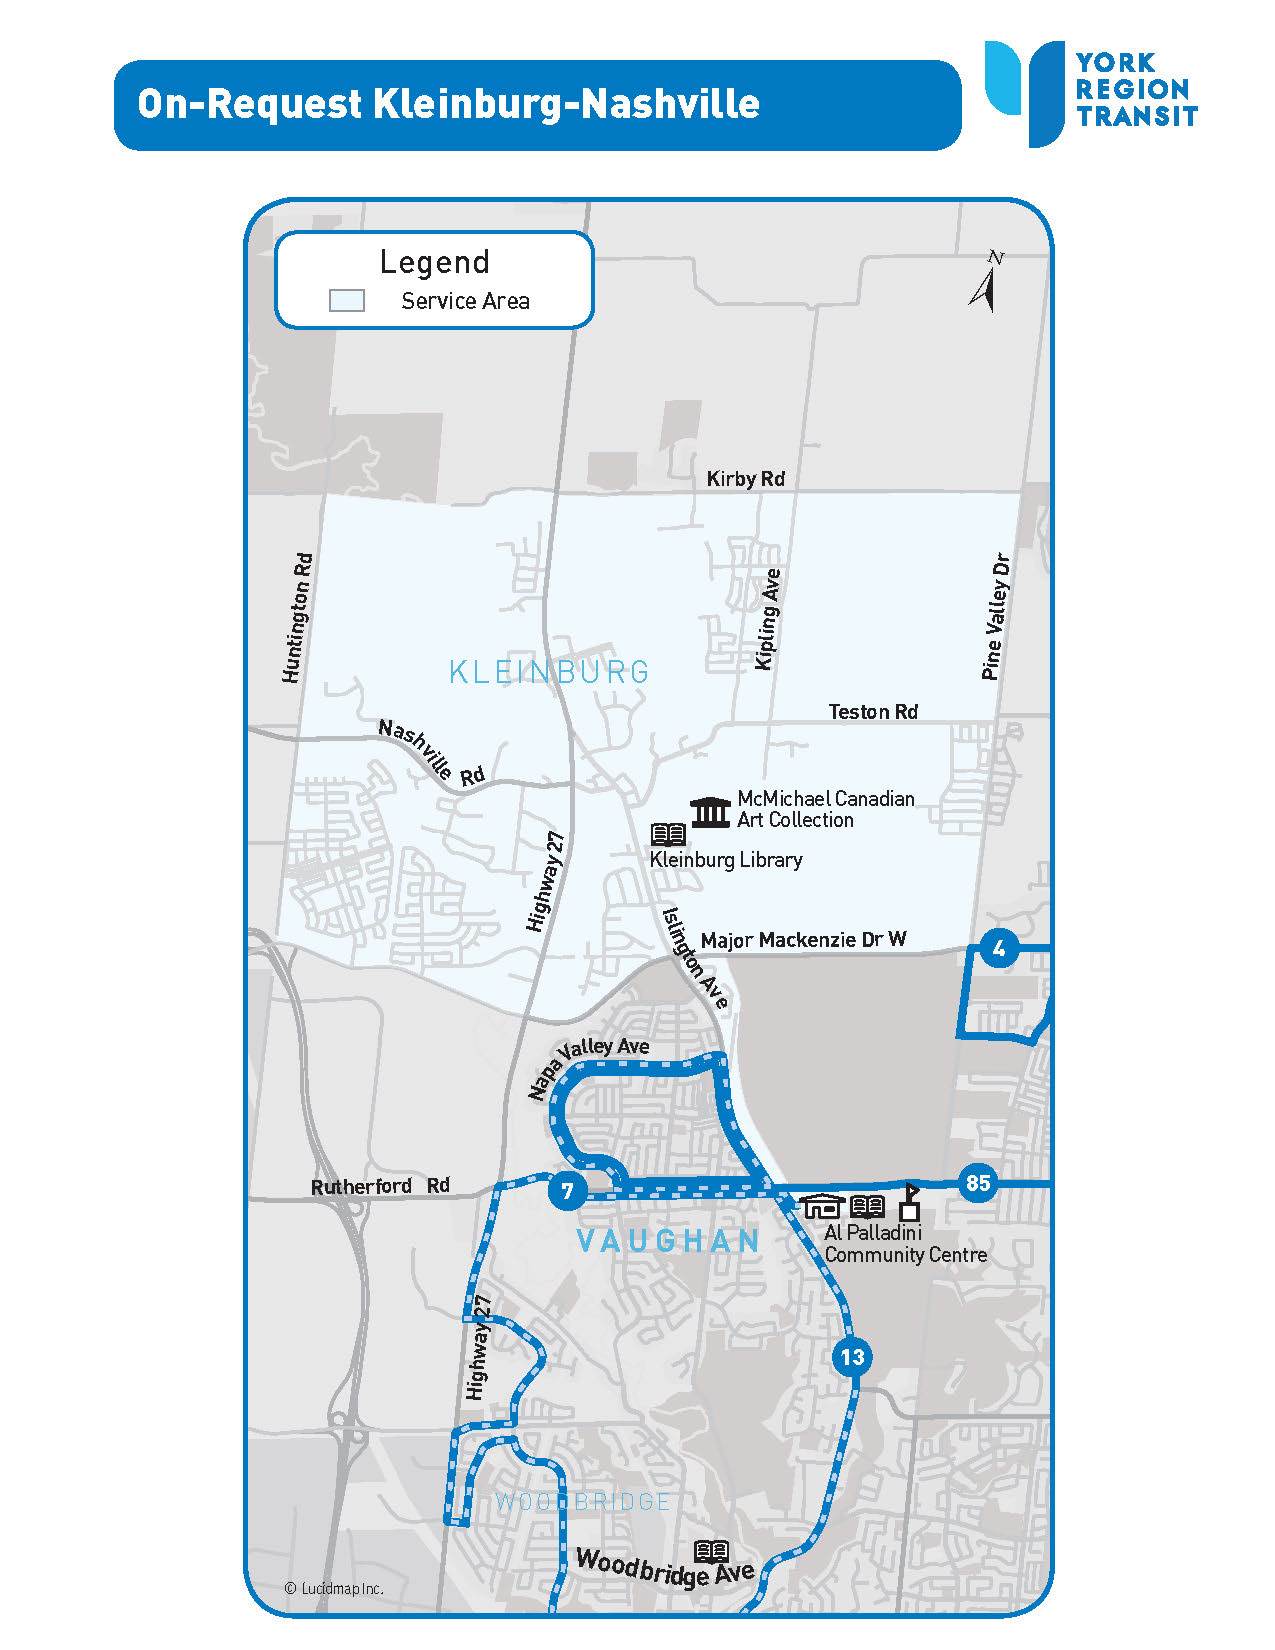 On-Request Kleinburg-Nashville service area map